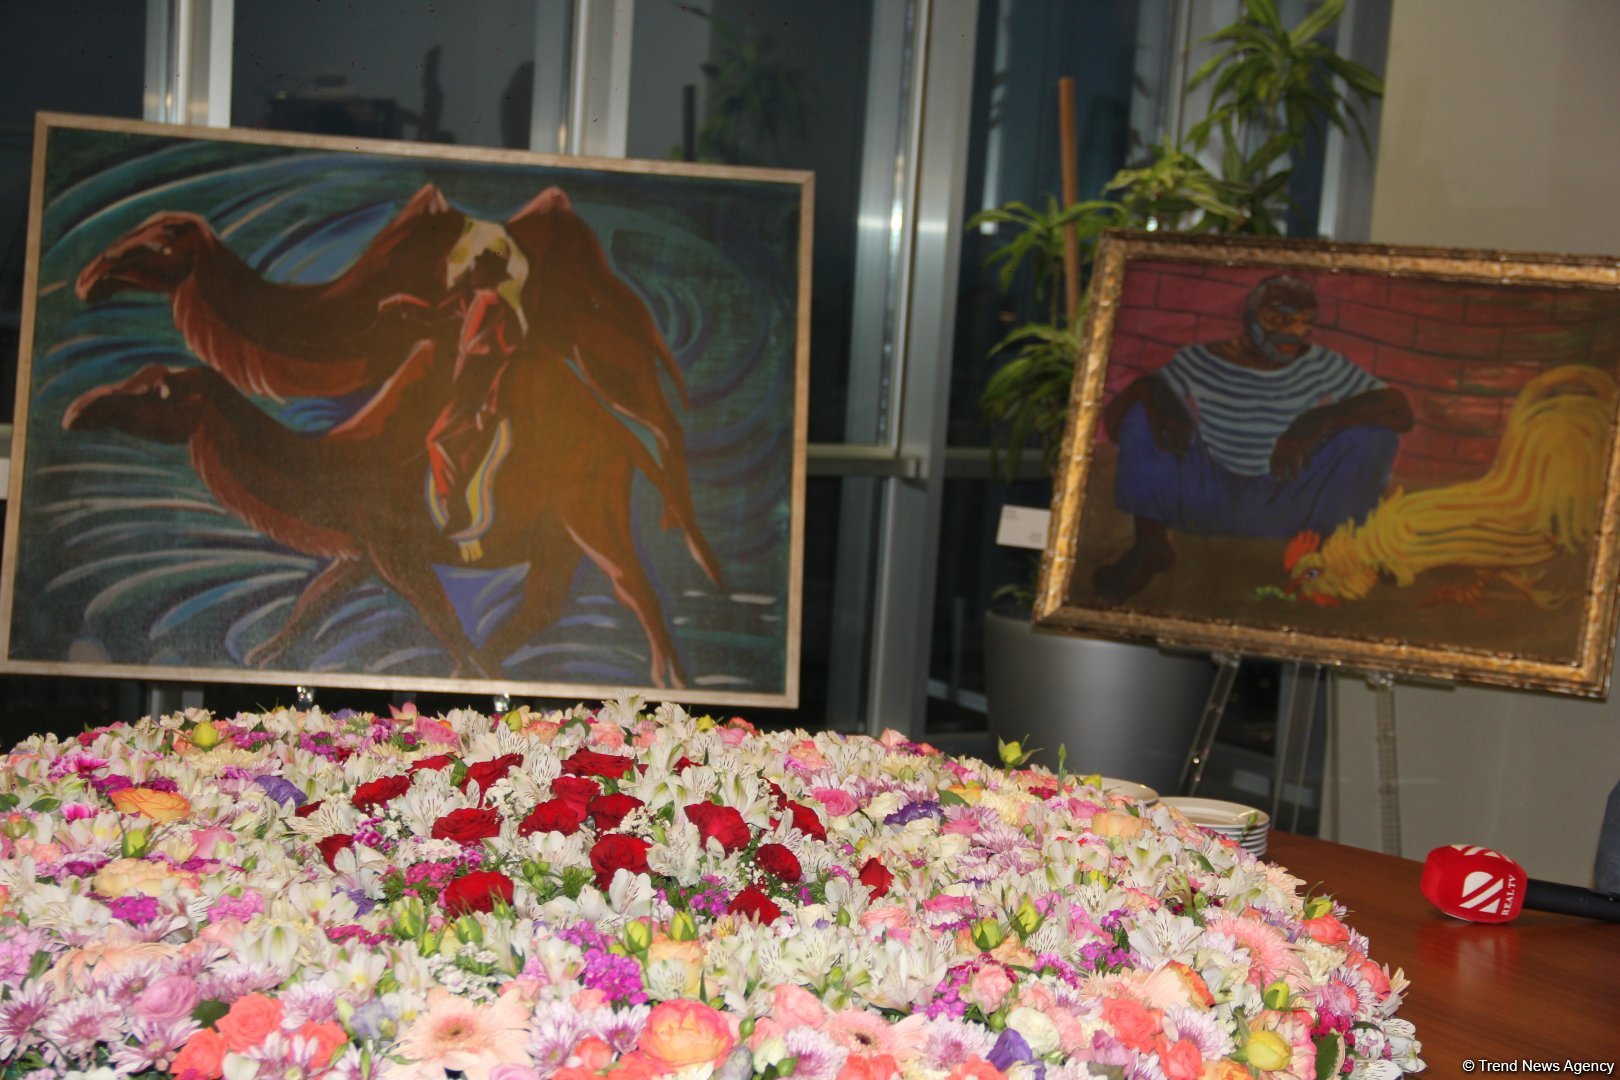 Xalq Bank провел презентацию художественного альбома, посвященного видному художнику Джахиду Джемалю (ФОТО)